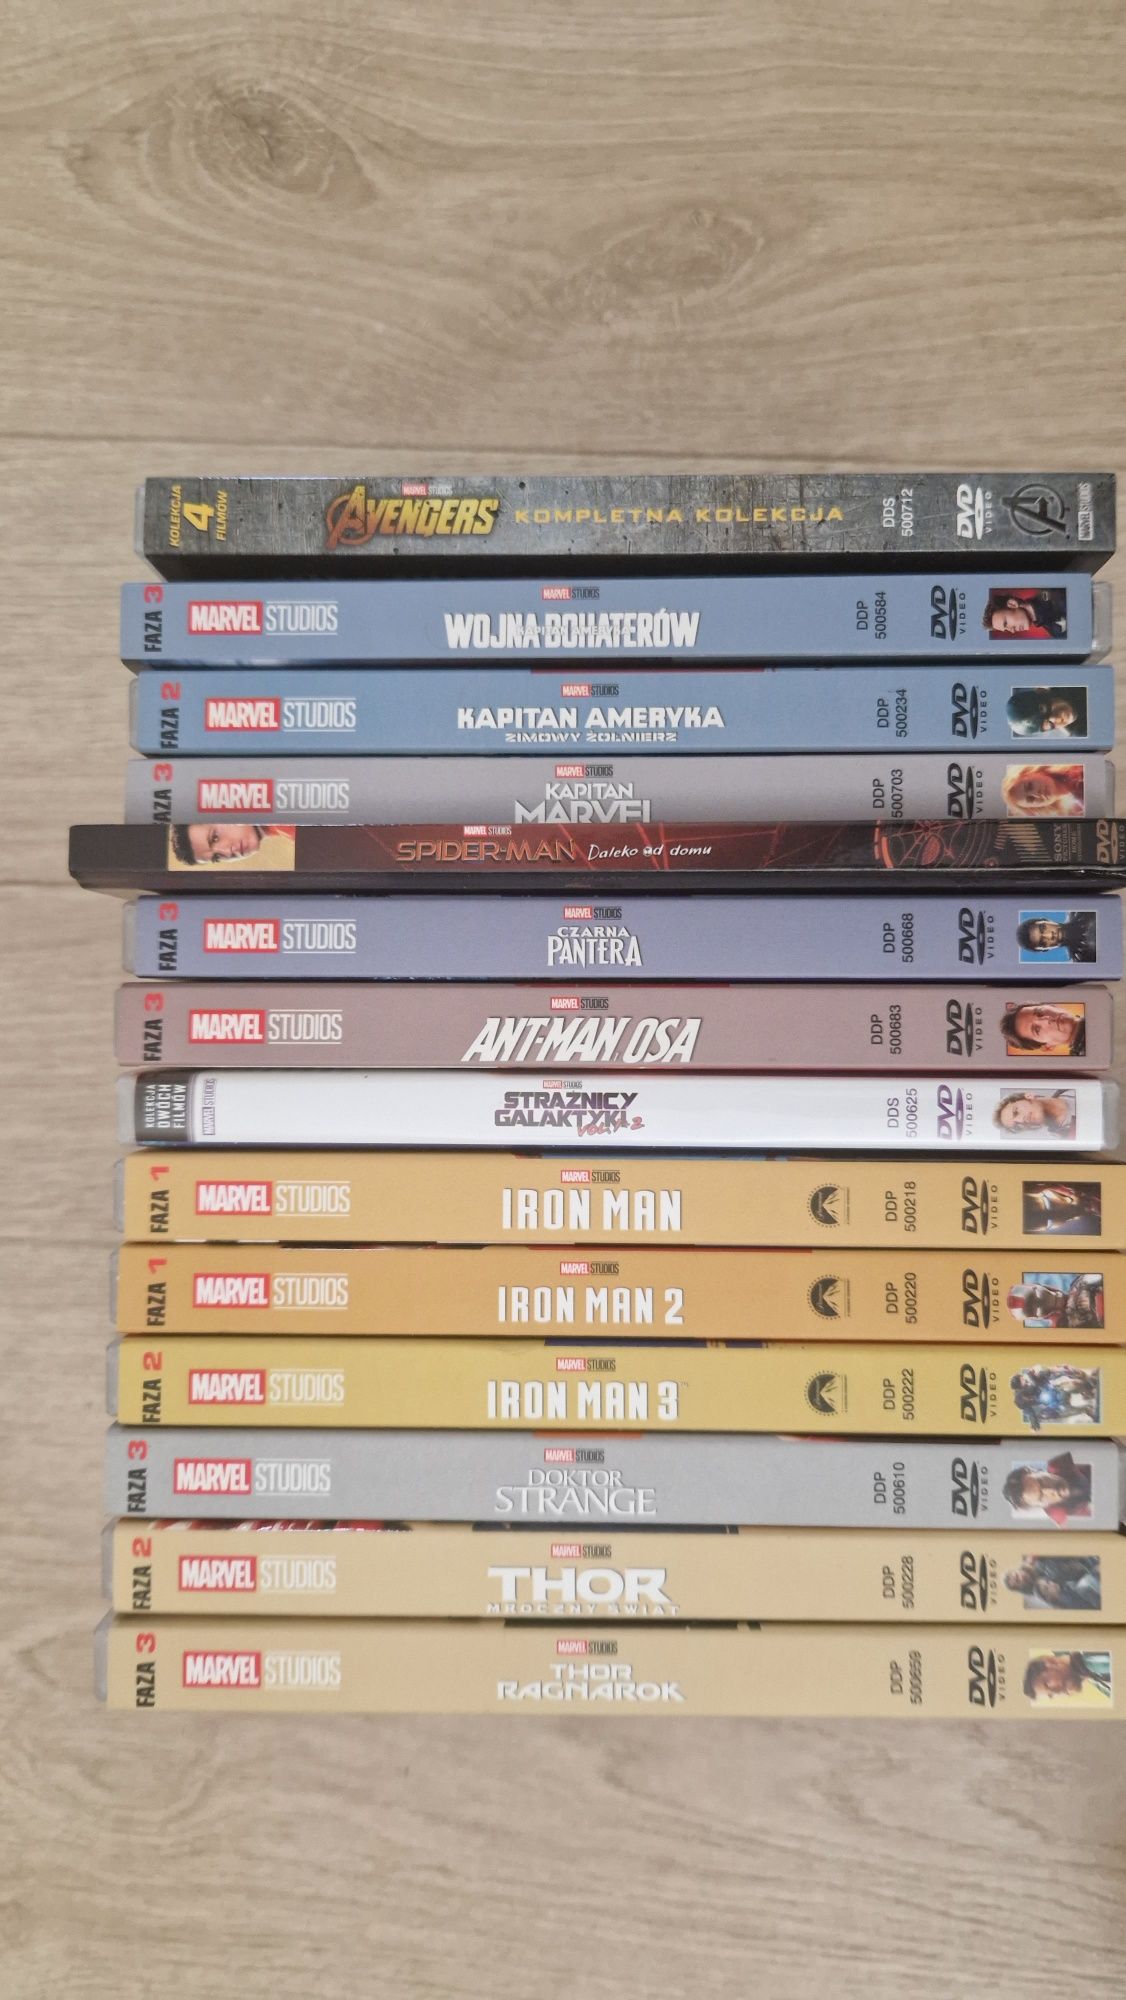 Marvel kolekcja płyt